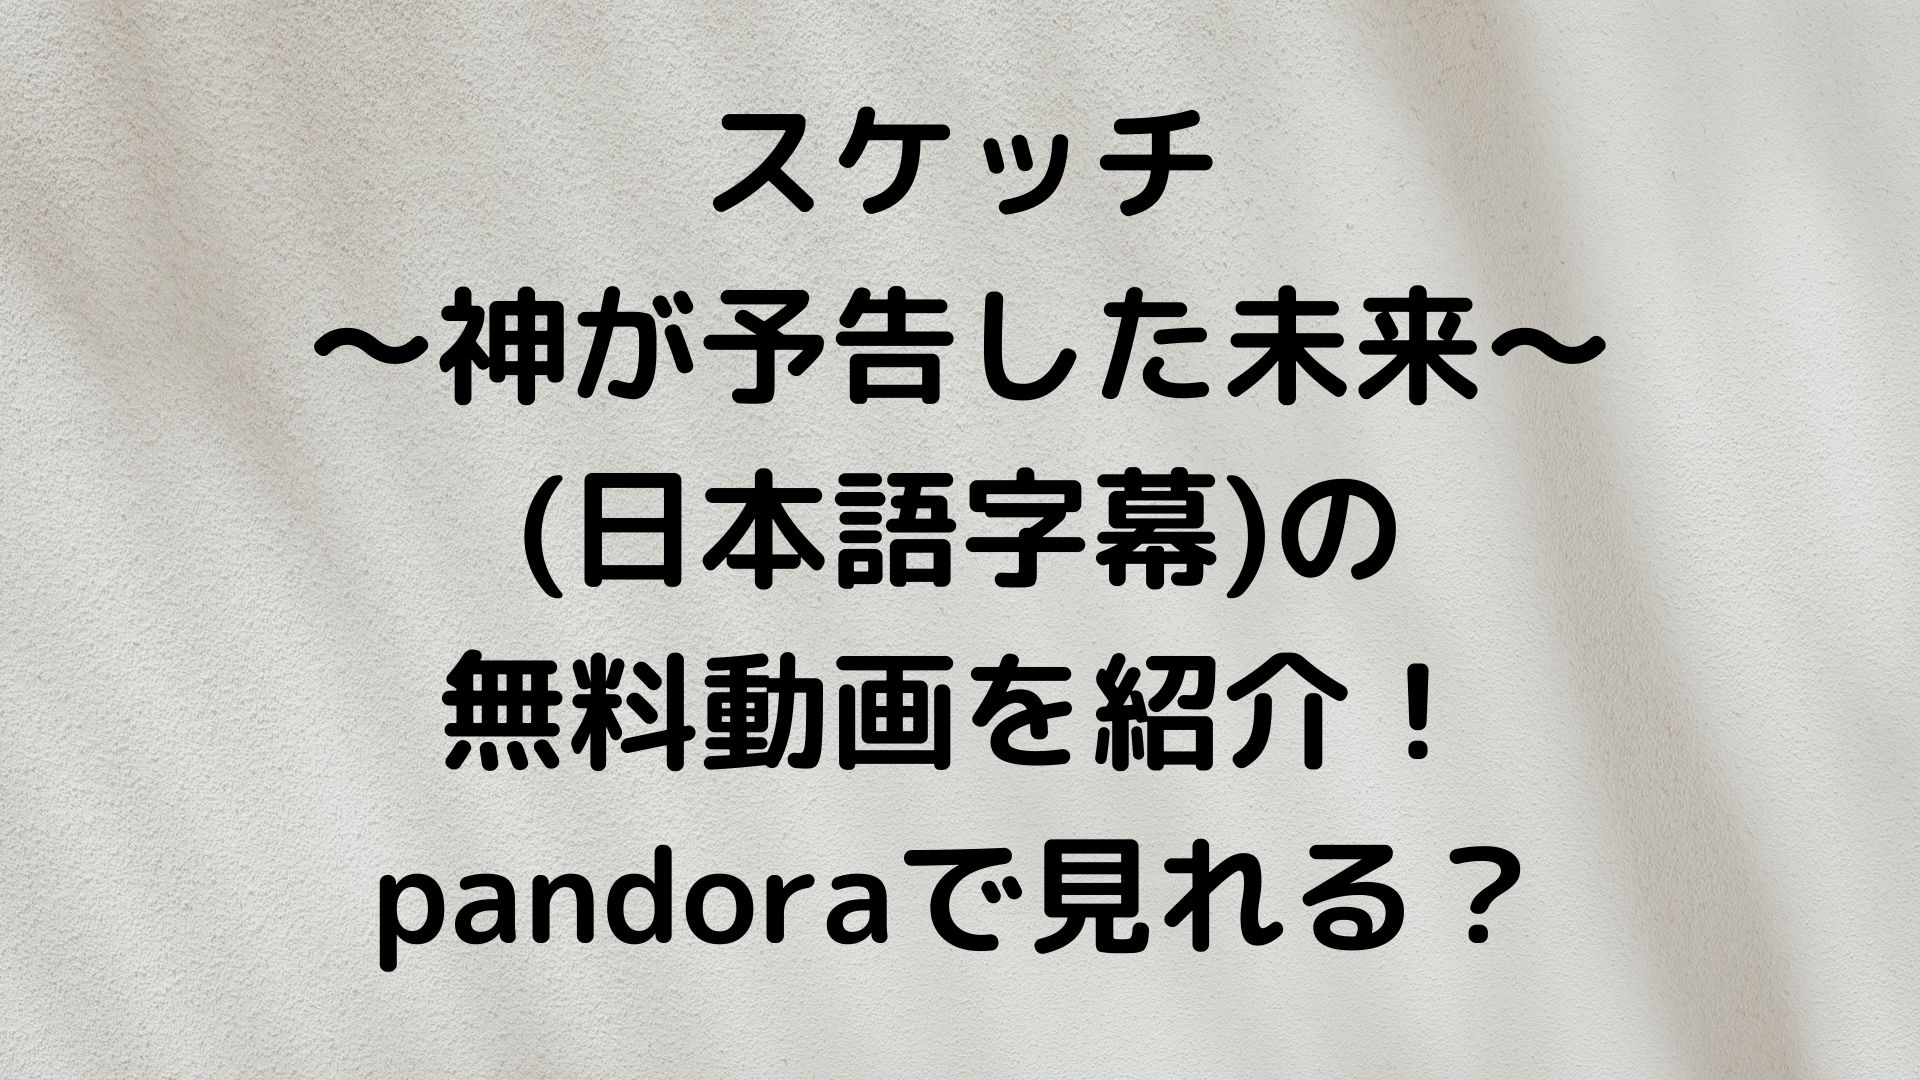 スケッチ 神が予告した未来 日本語字幕 の無料動画を紹介 Pandoraで見れる ドラマ無料動画 Cm曲名まとめ